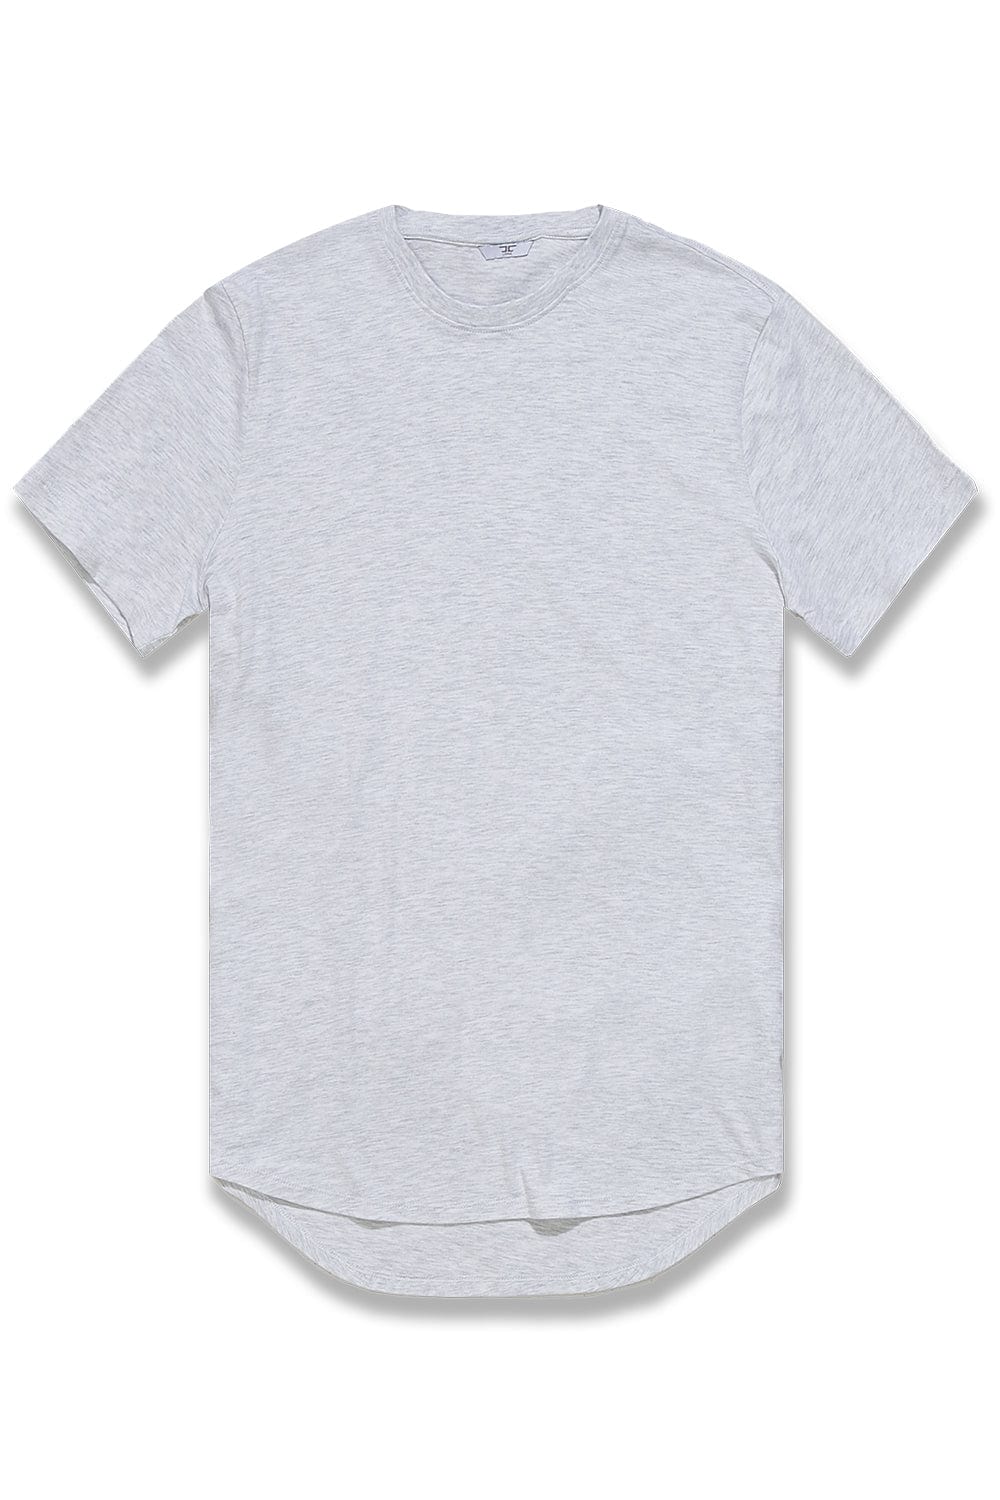 JC Big Men Big Men's Scallop T-Shirt White Silver / 4XL